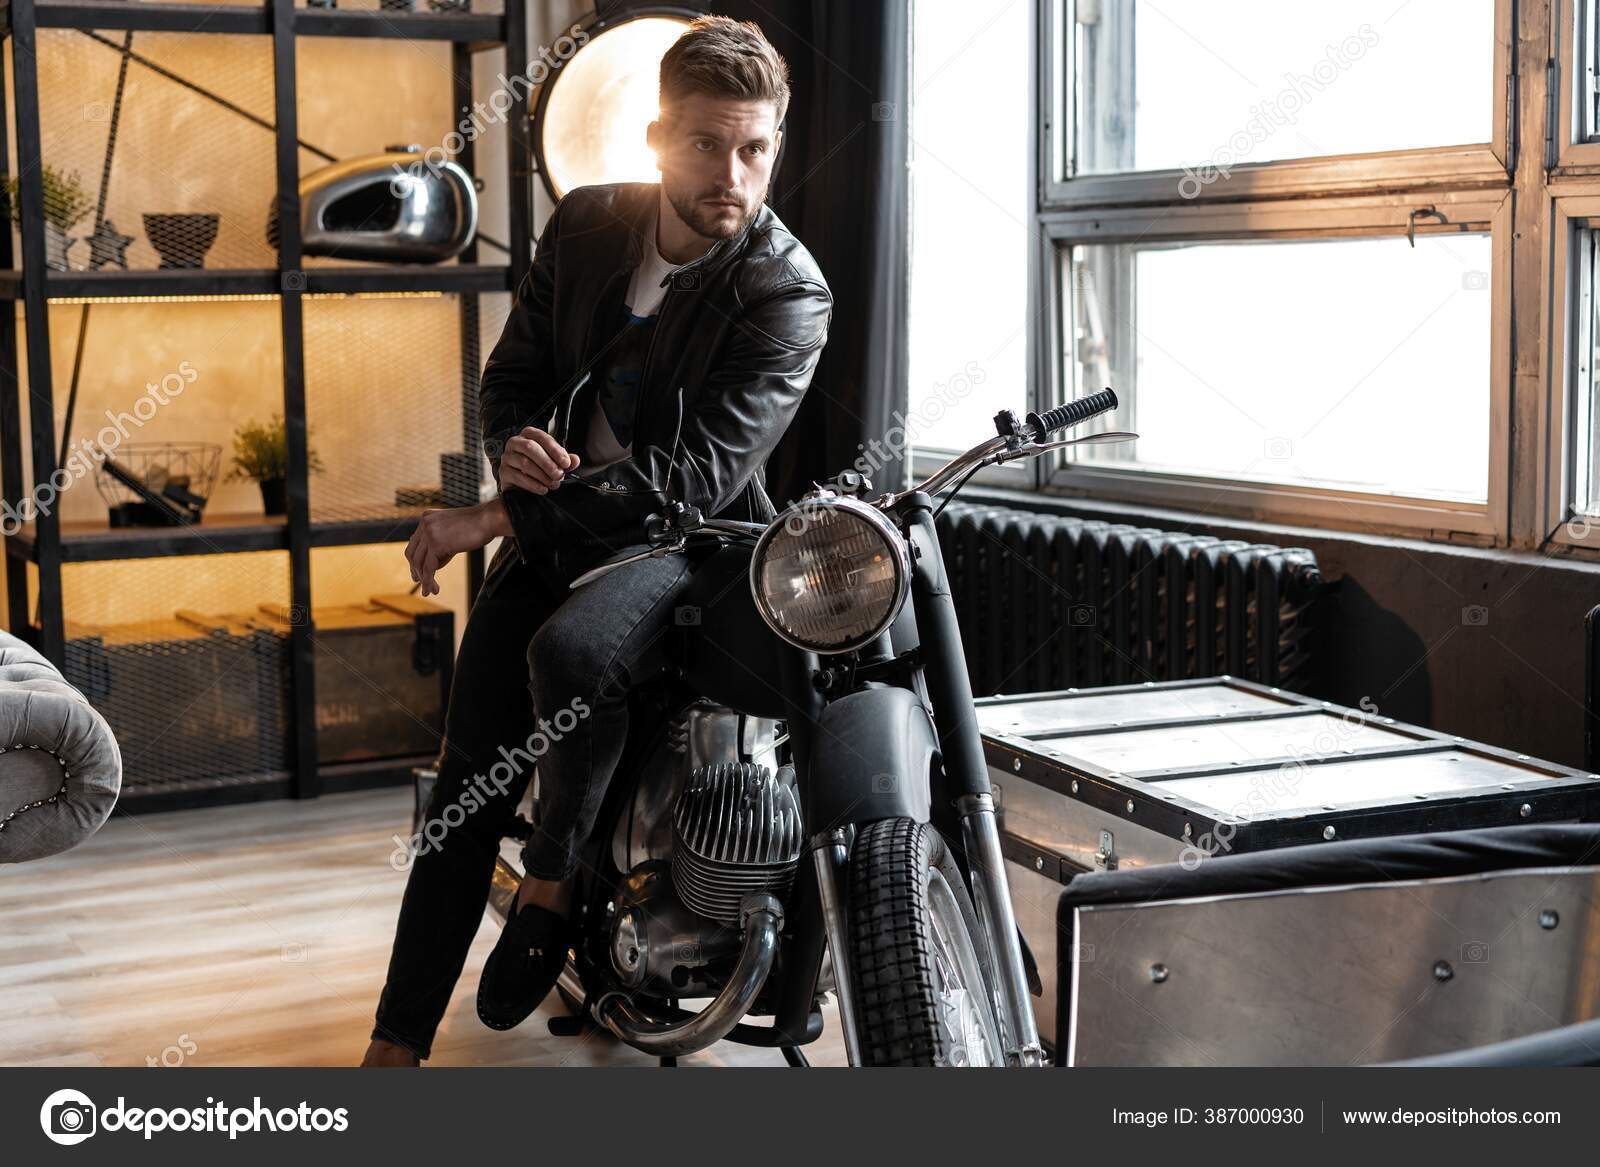 Hombre joven con estilo en chaqueta de cuero sentado en moto